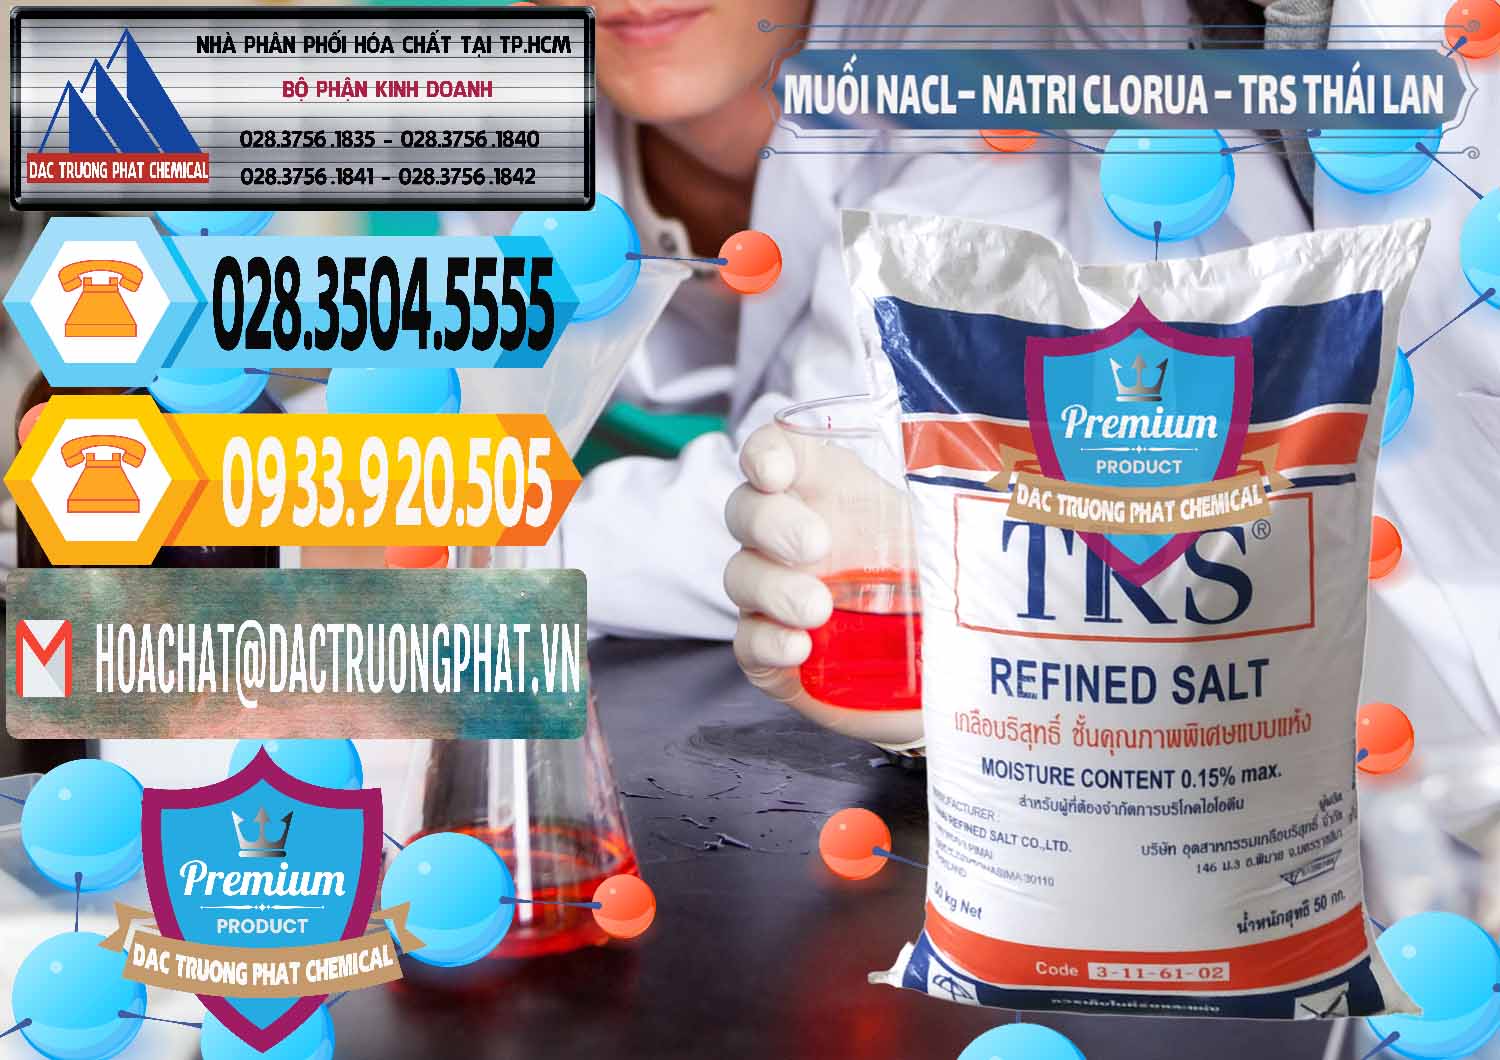 Đơn vị kinh doanh _ bán Muối NaCL – Sodium Chloride TRS Thái Lan - 0096 - Cung cấp ( phân phối ) hóa chất tại TP.HCM - hoachattayrua.net